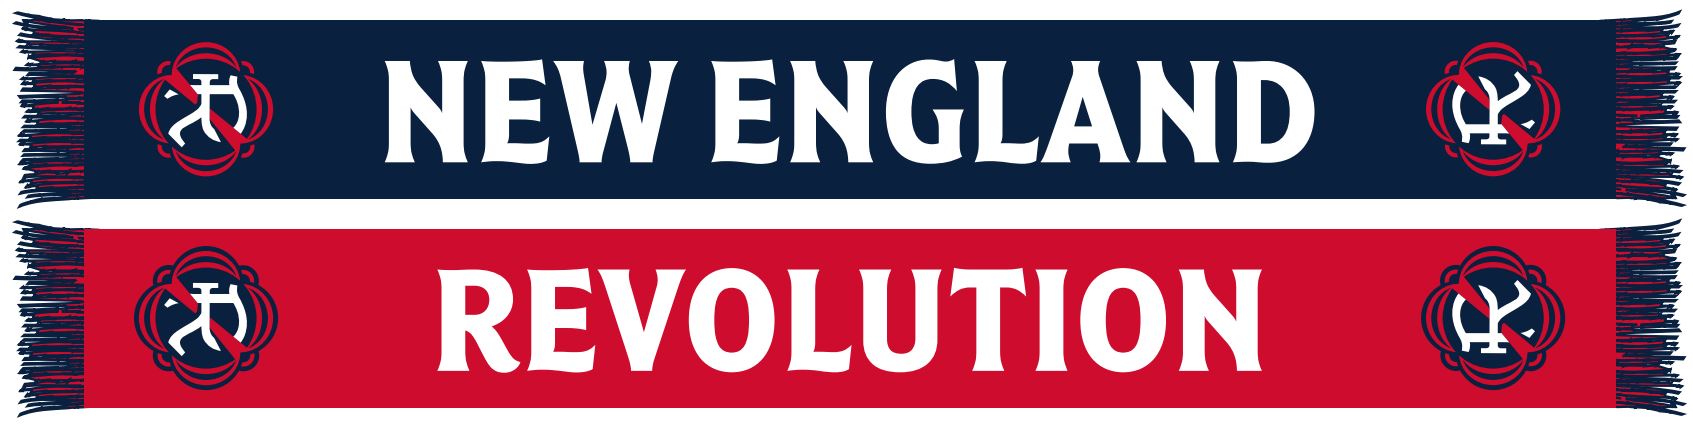 New England Revolution Team Shop in MLS Fan Shop 